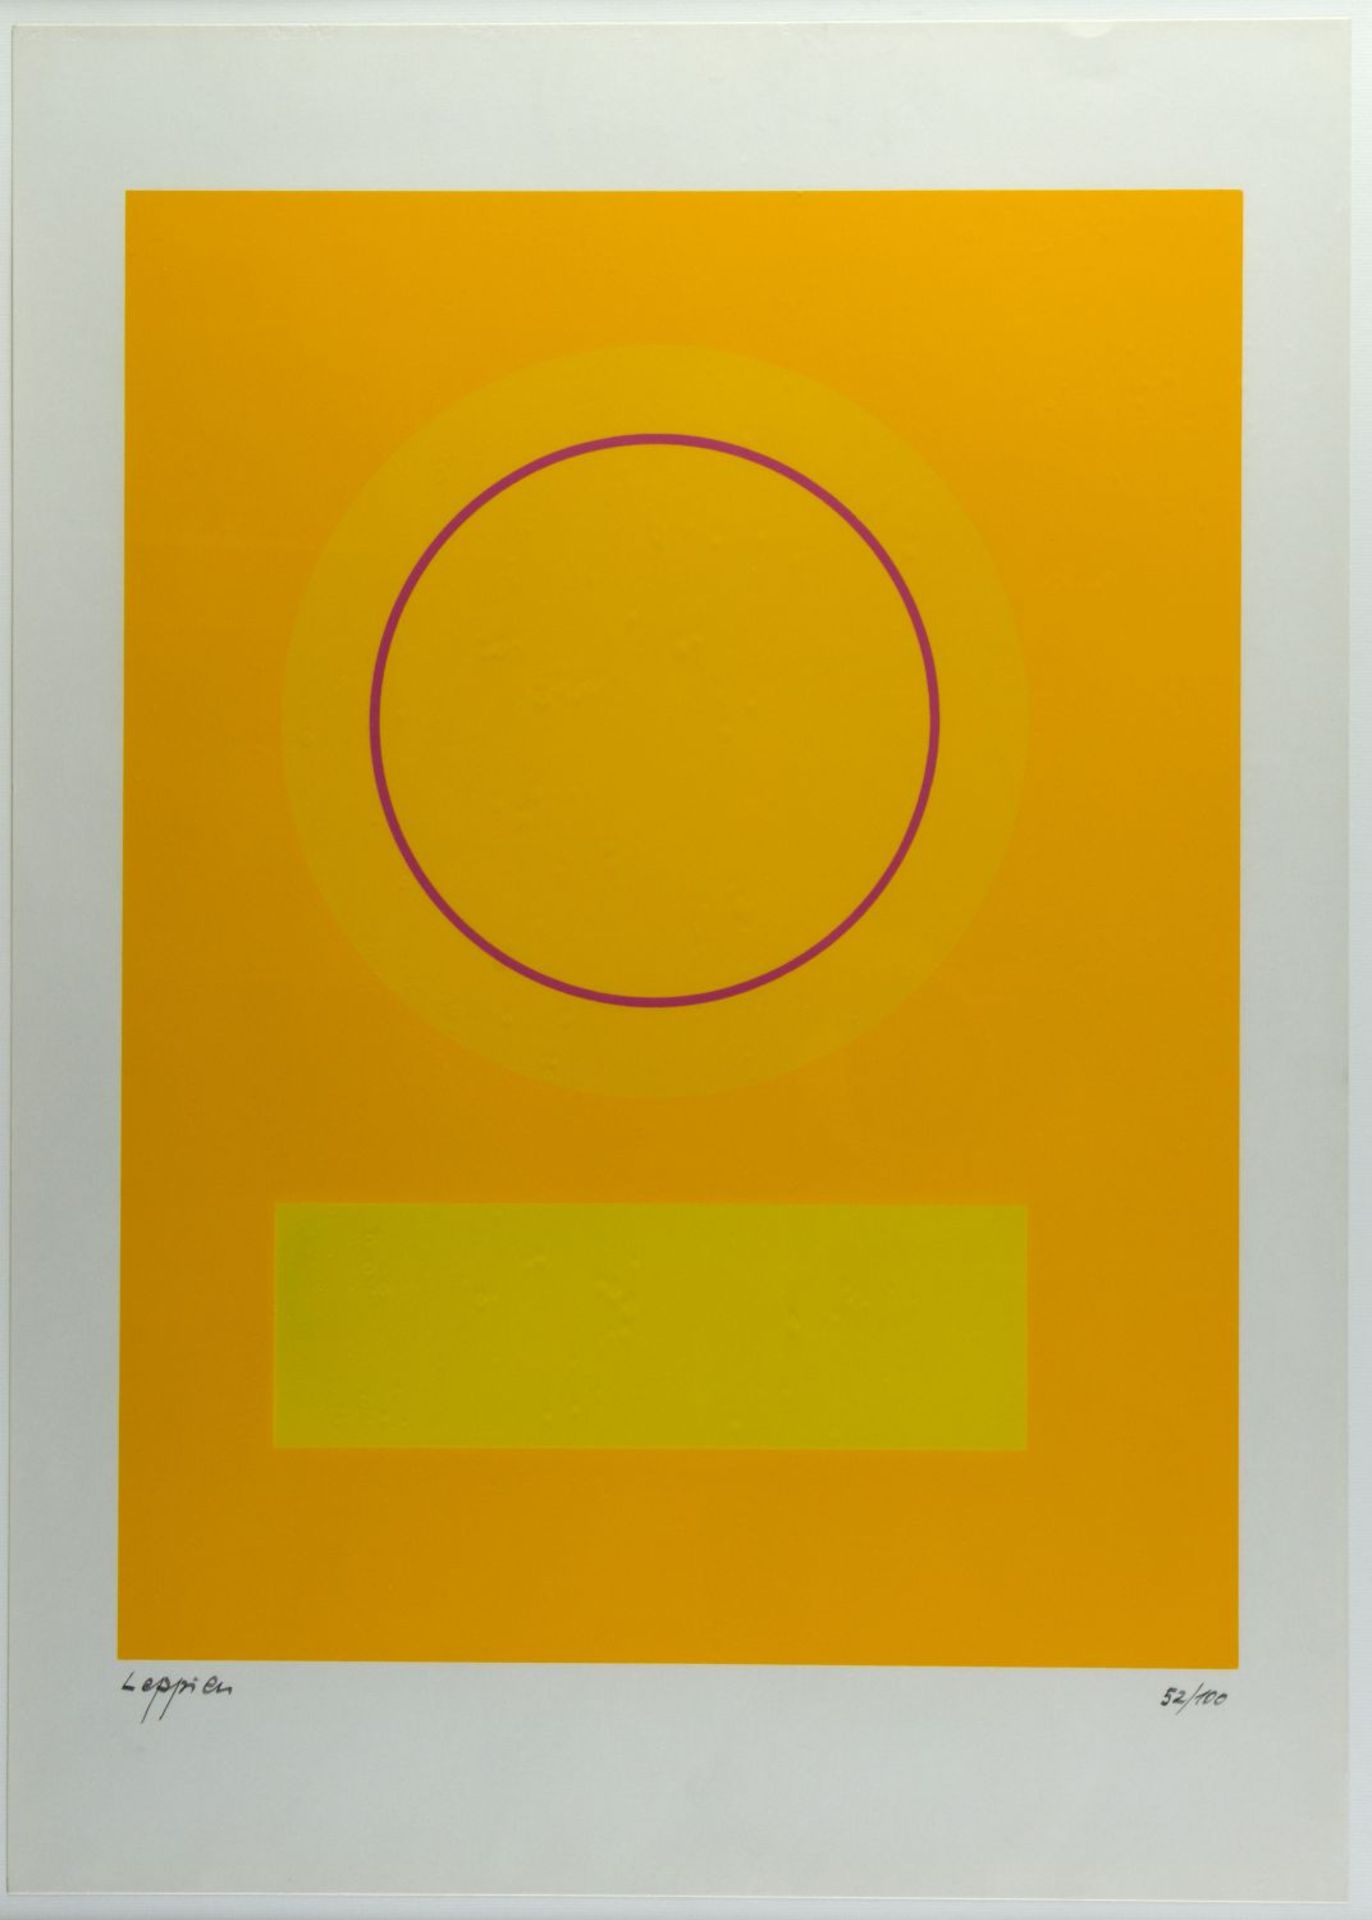 Leppien, Jean u.a. Komposition mit einem Kreis. Variation blau/grün rote Sonne u.a. 2 Farbse - Bild 4 aus 7